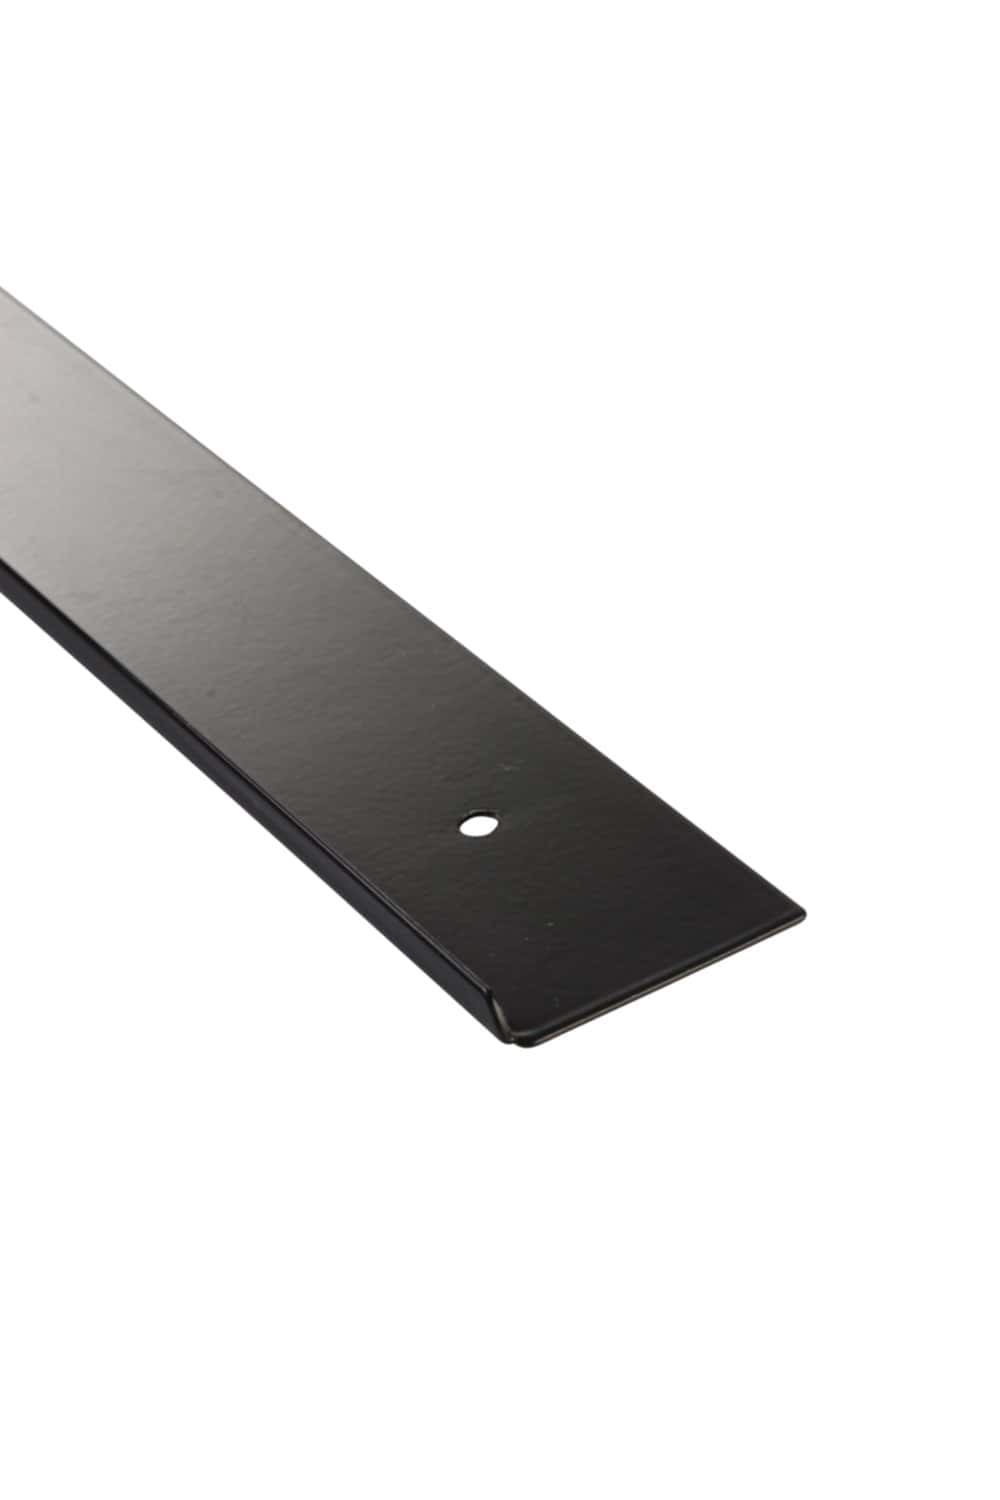 Profil de finition aluminium pour plan de travail 38mm noir - NORDLINGER -  Mr.Bricolage